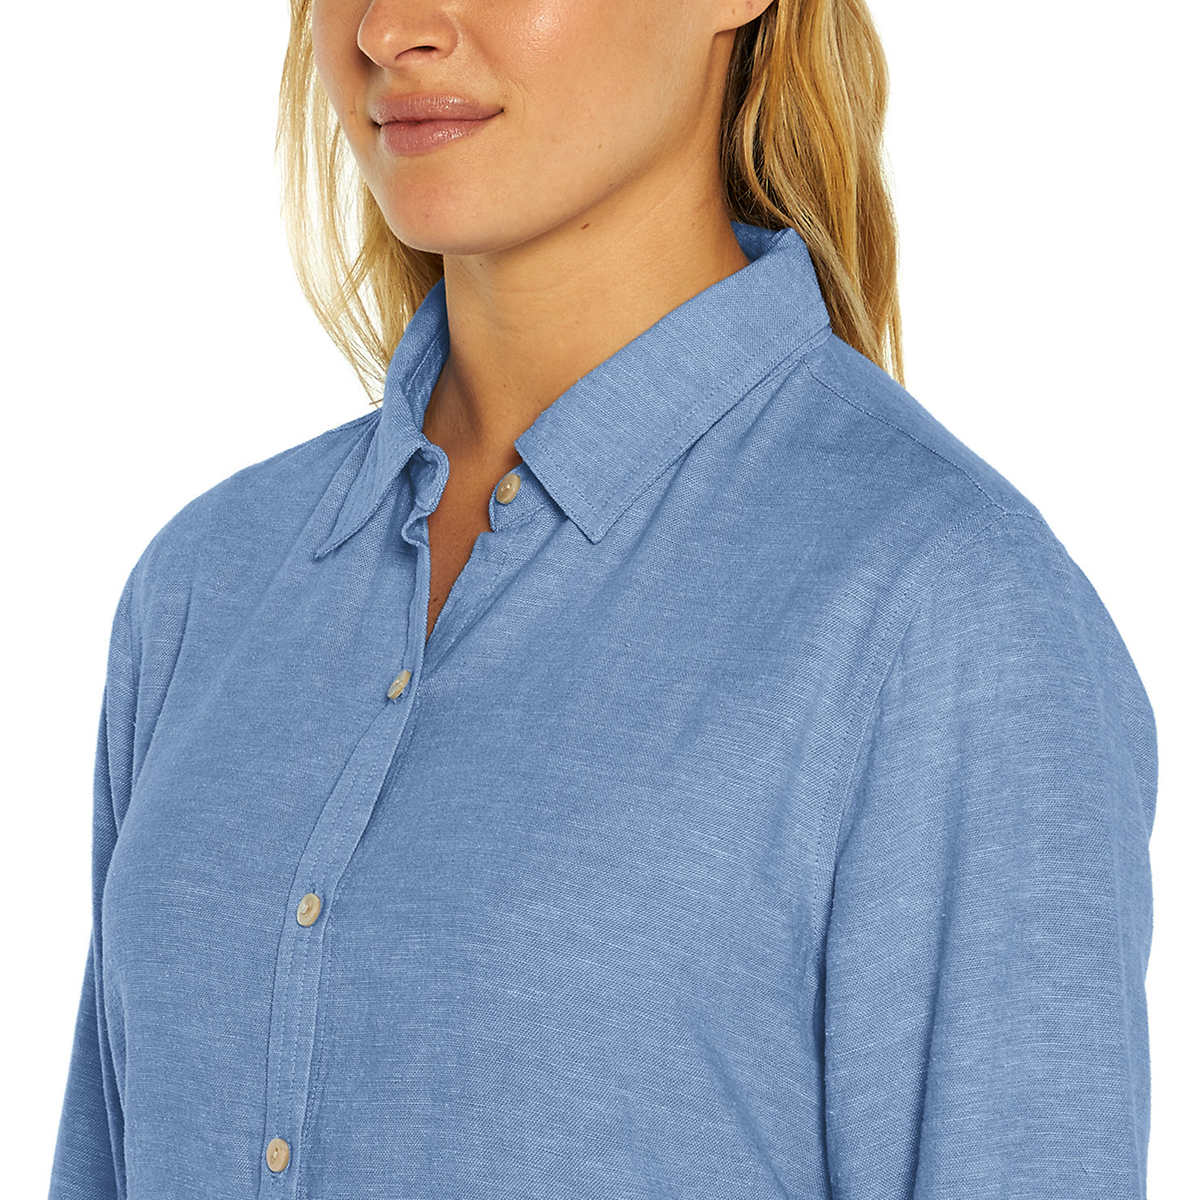 Orvis Women's Soft Lightweight Linen Blend Long Sleeve Top Button Up Shirt